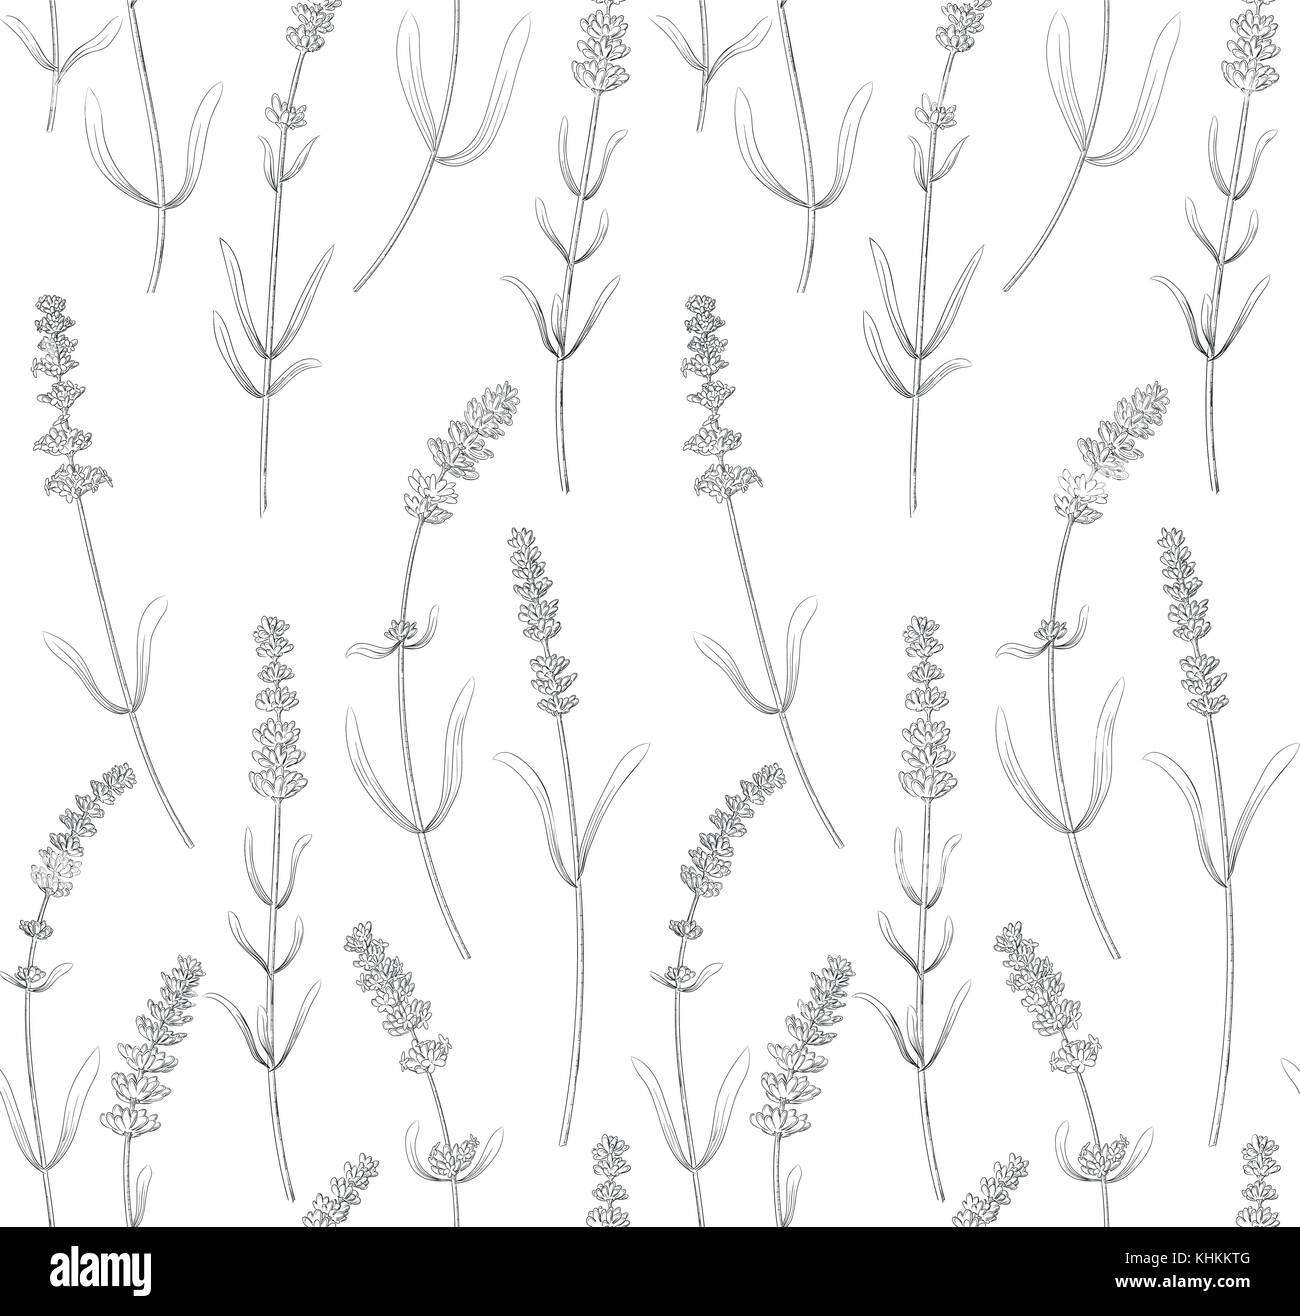 Lavendel Blüten, Blätter vintage nahtlose Vektor Muster Hintergrund design Botanical Hand gezeichnet lineare Grafik wallpaper Stoff textil Papier swatch. Stock Vektor